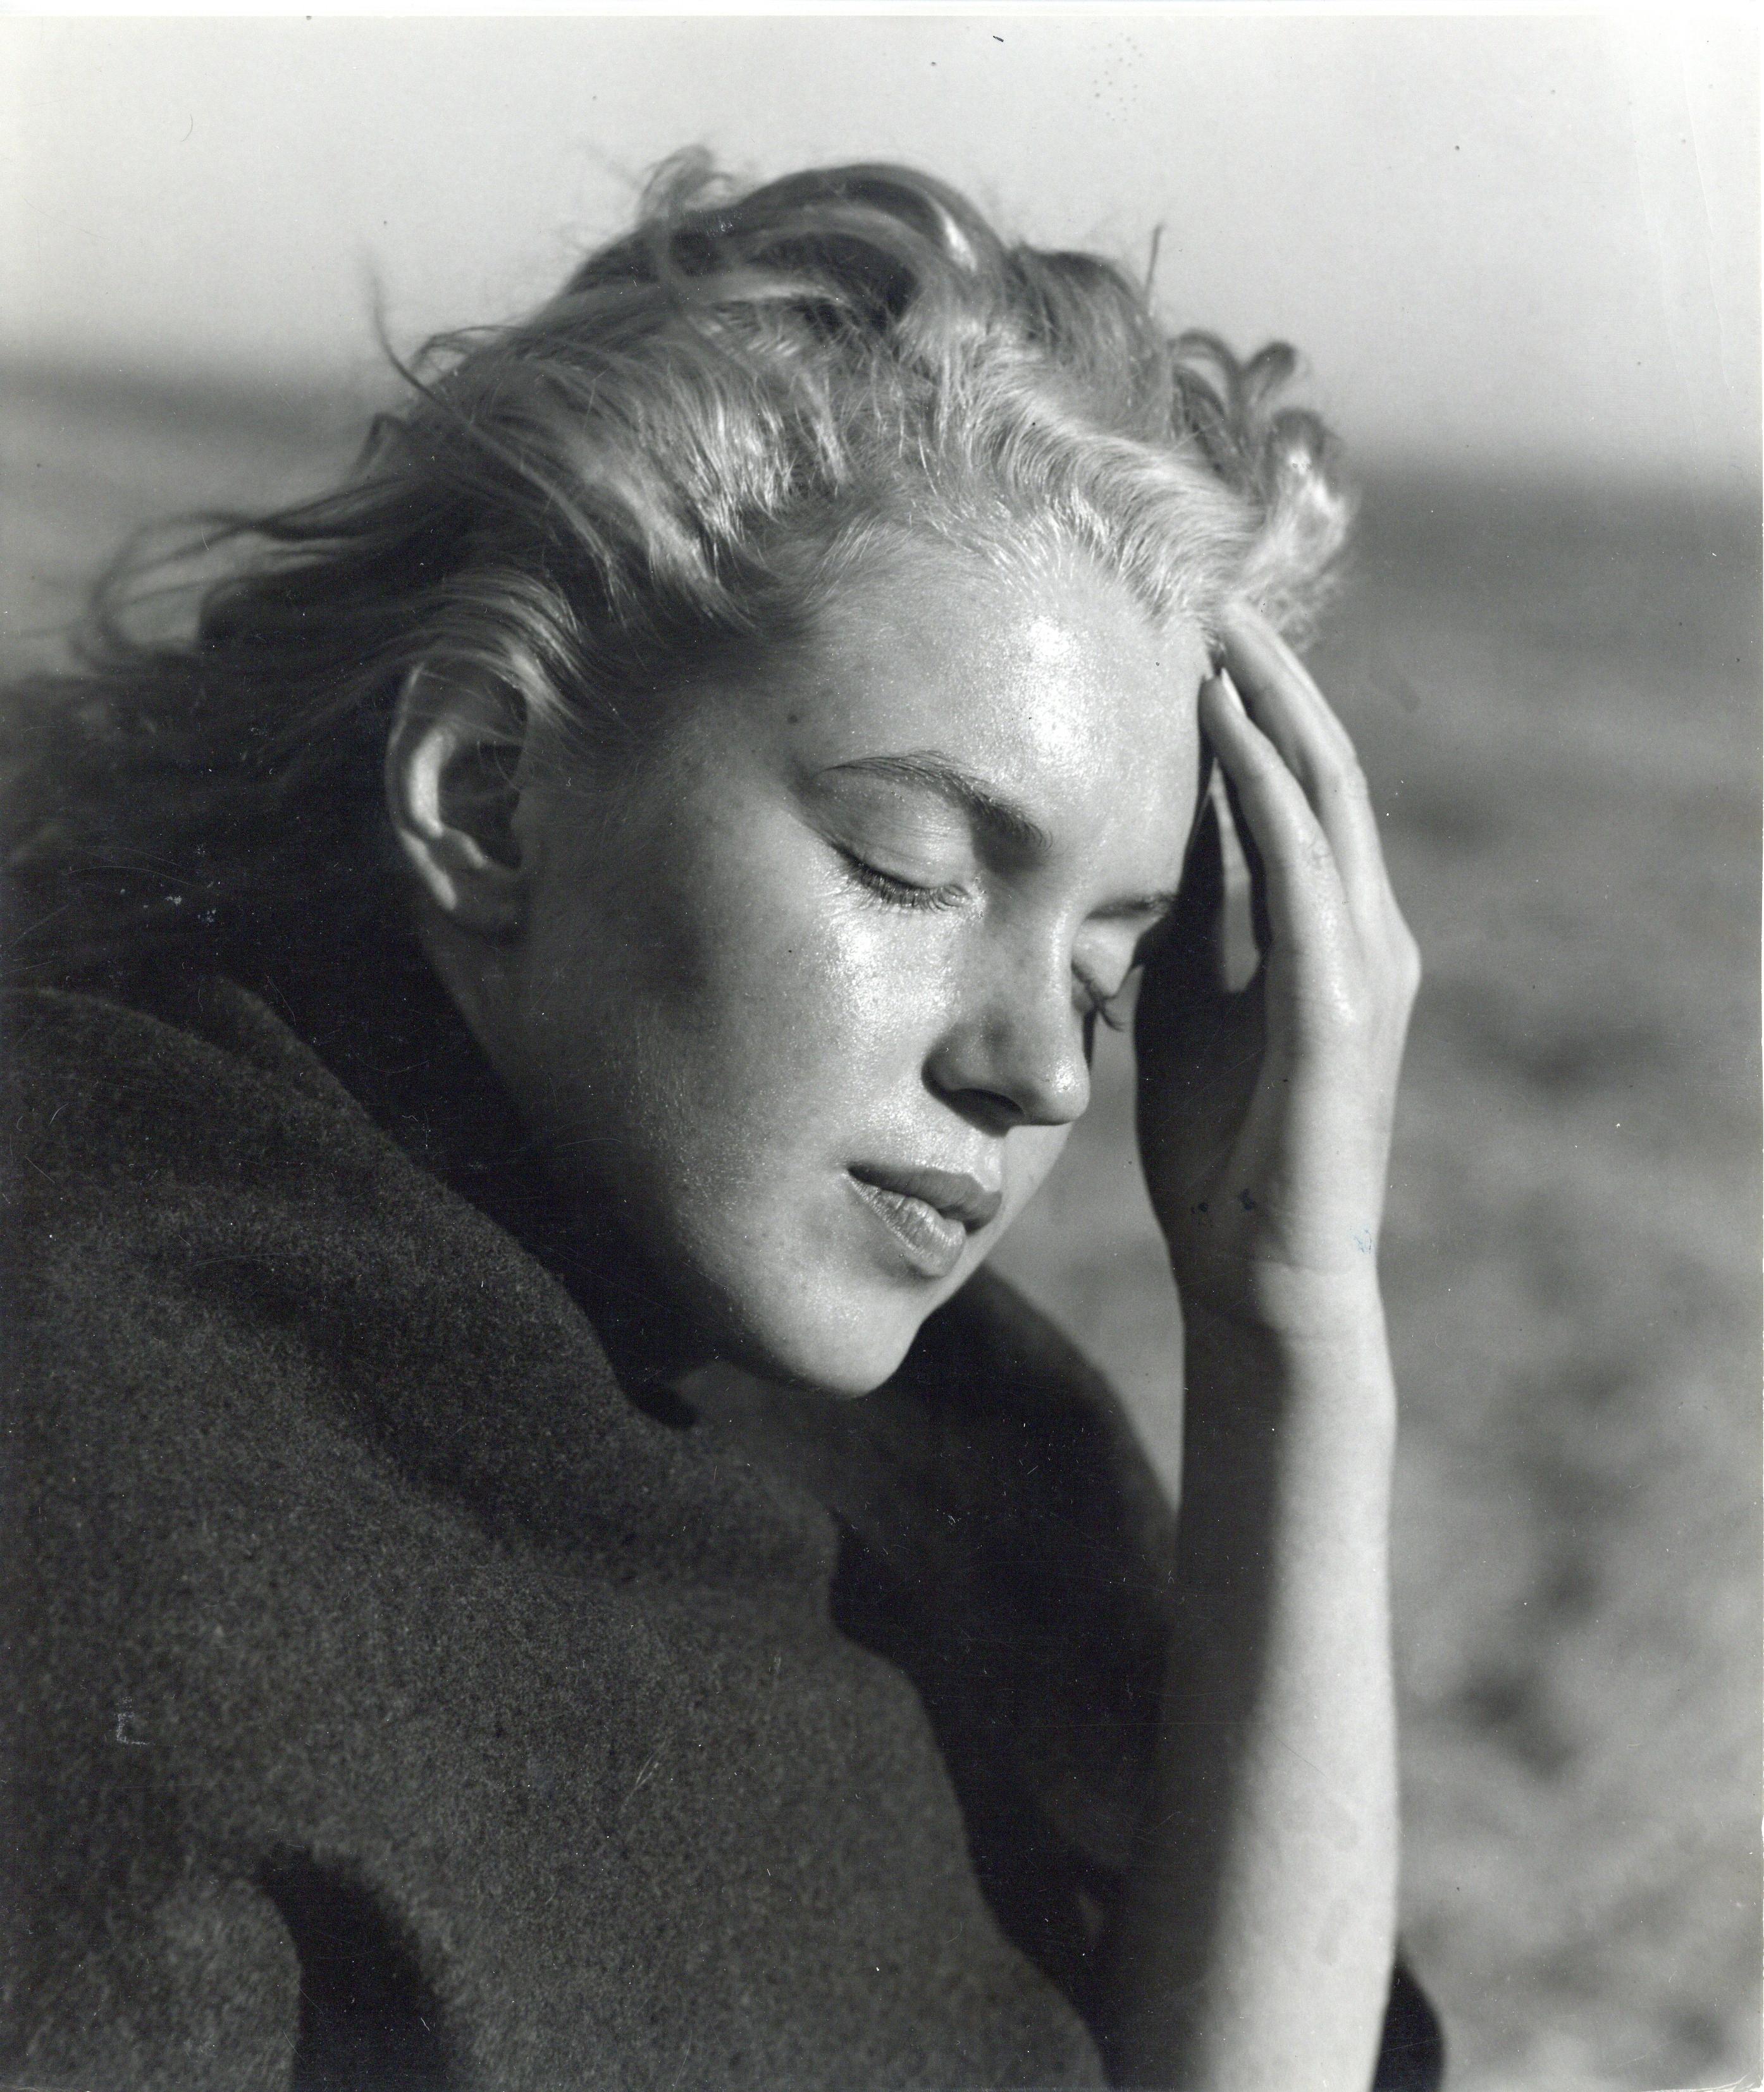 Andre de Dienes Portrait Photograph - Marilyn Monroe on the Beach Vintage Original Photograph